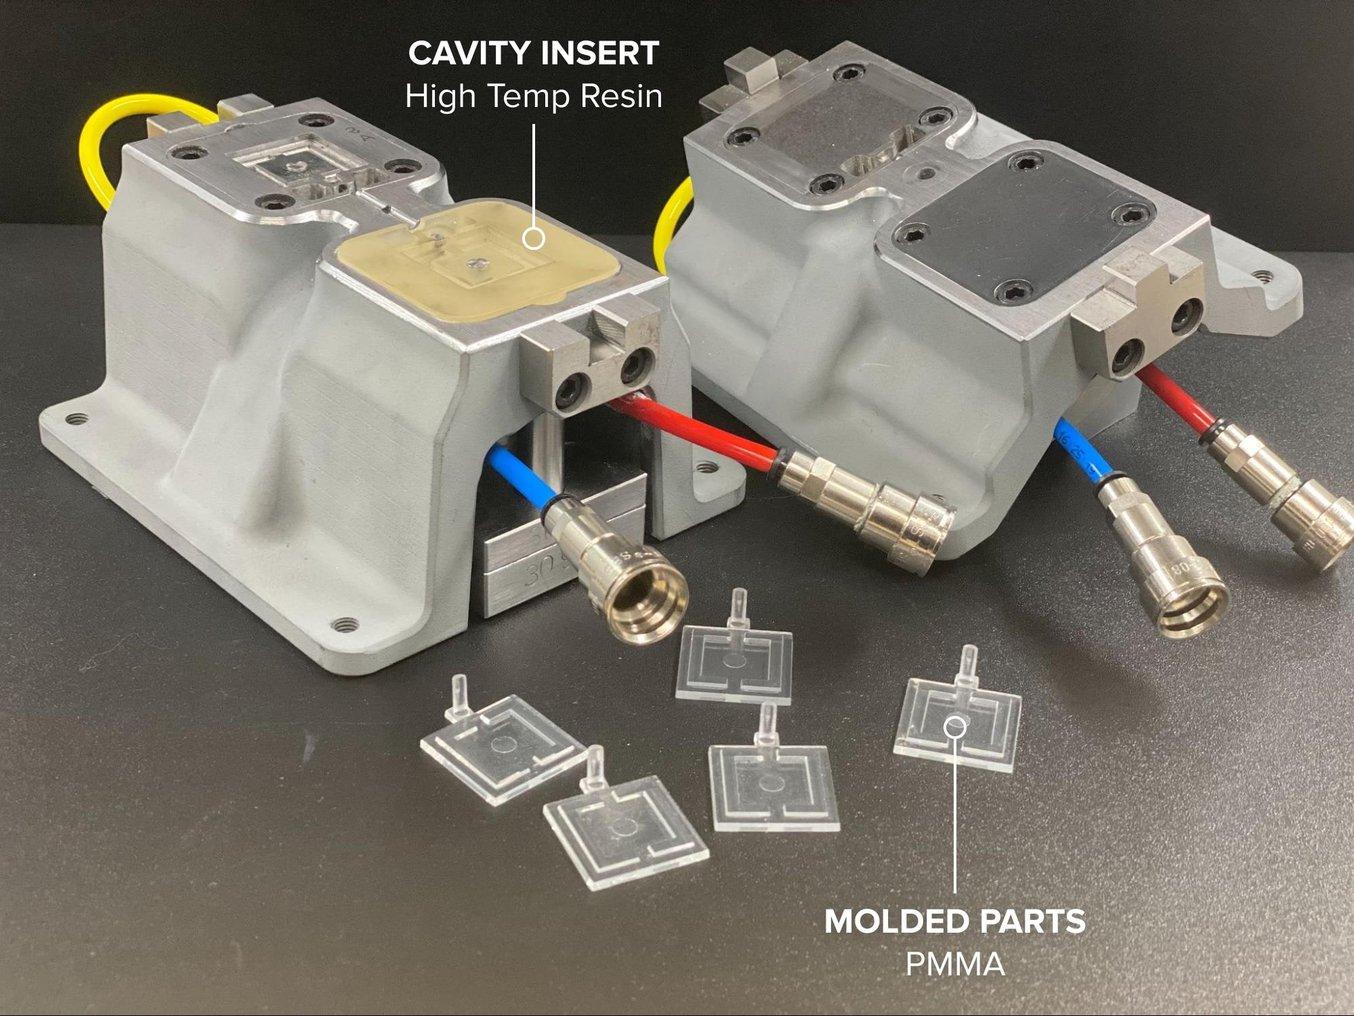 Conjunto de moldeo por inyección para un componente automovilístico hecho con acrílico, utilizando insertos de molde de High Temp Resin.